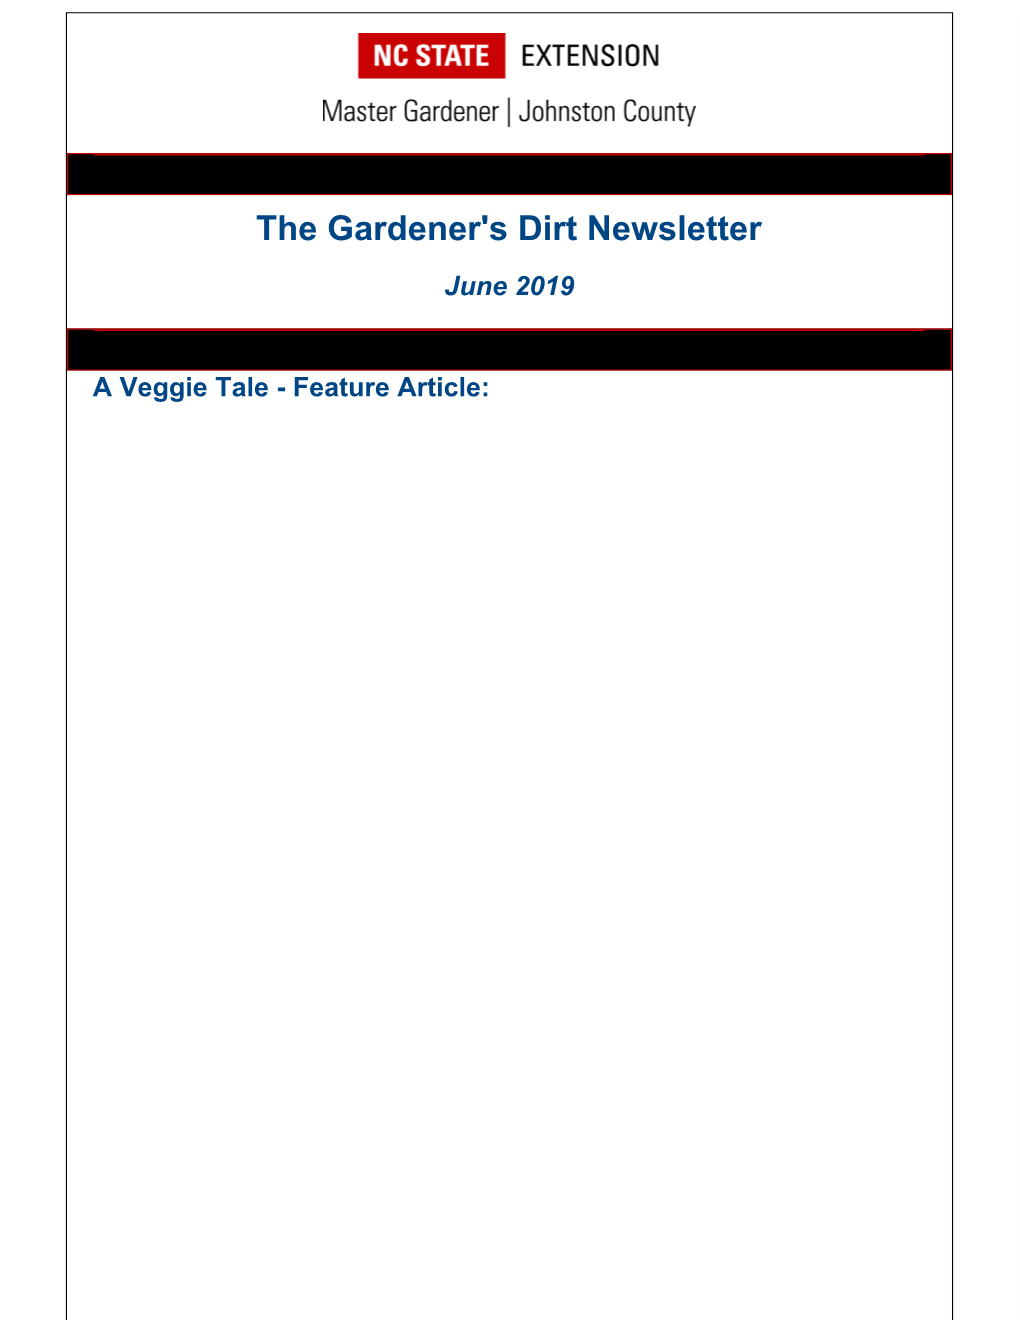 The Gardener's Dirt Newsletter June 2019